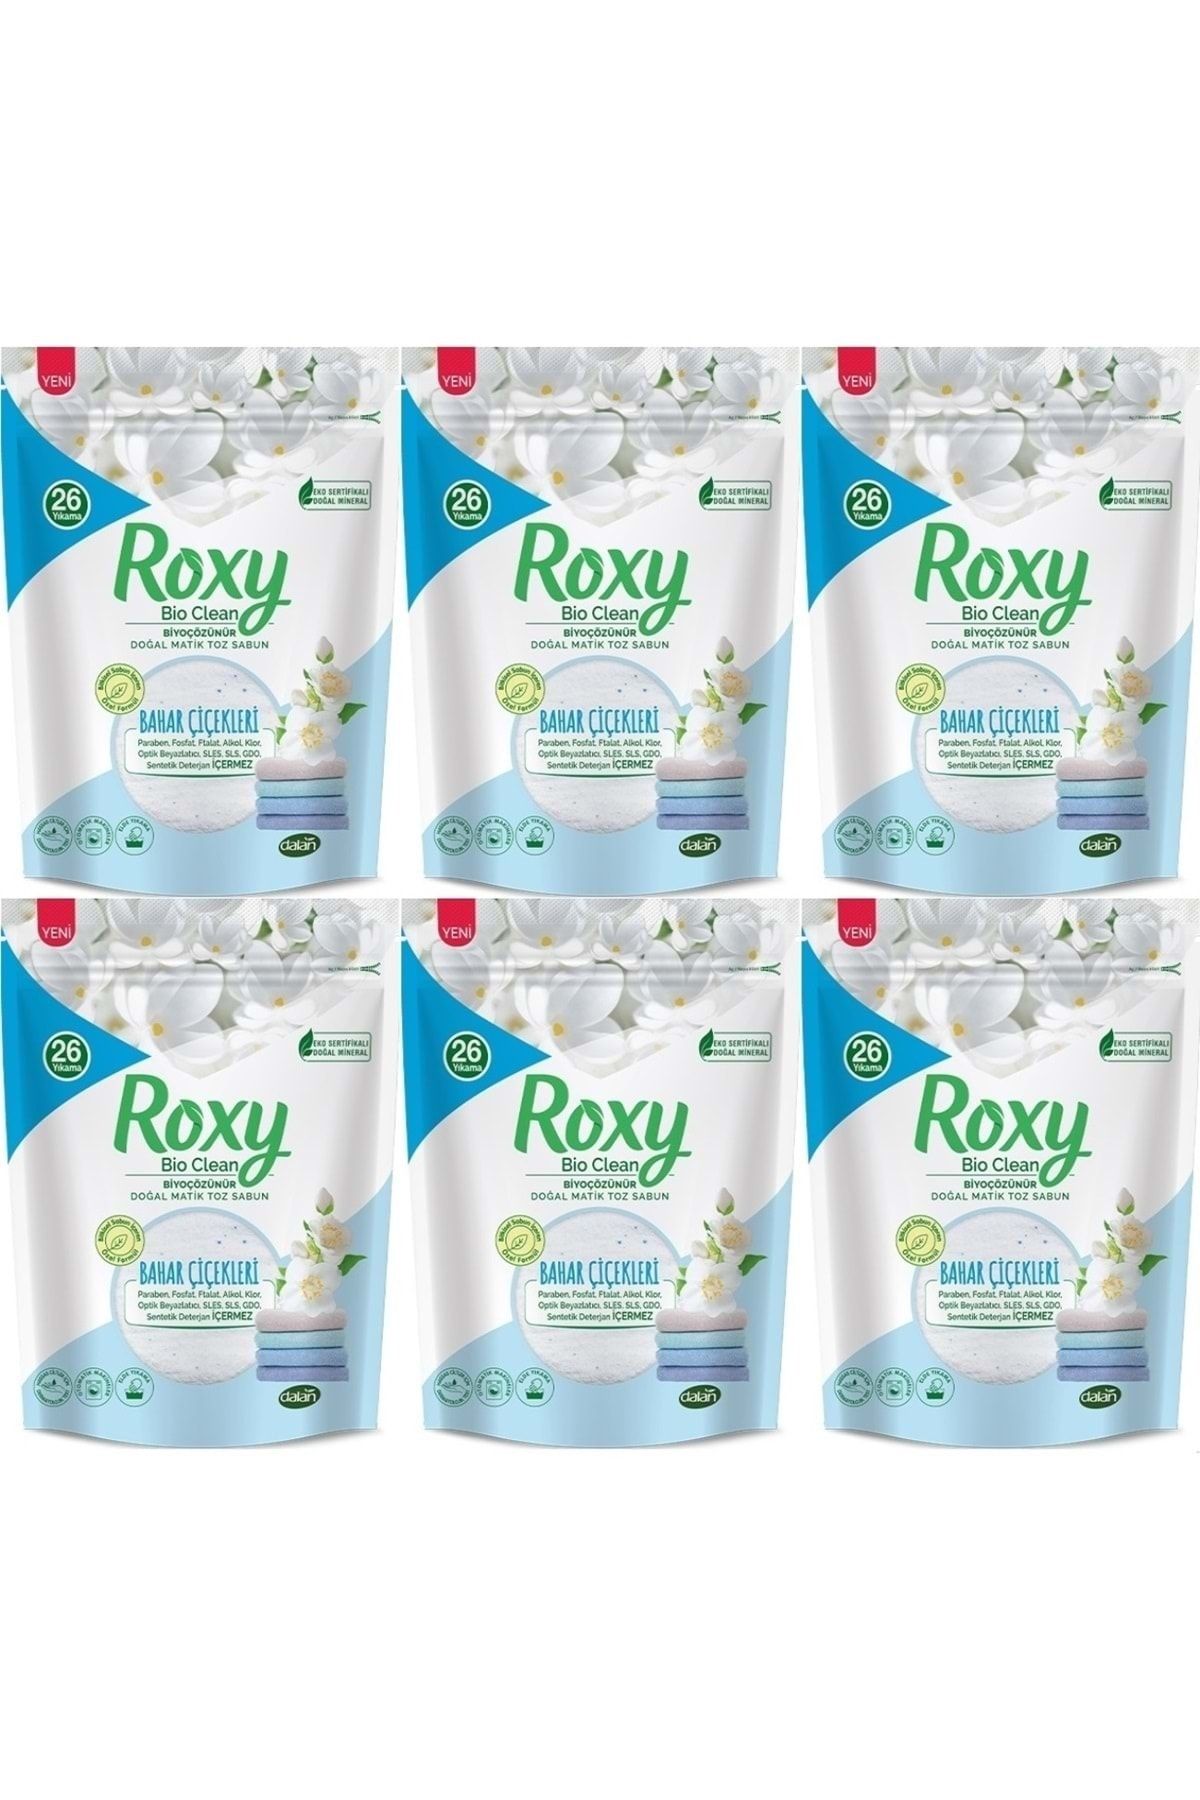 Dalan Roxy Bio Clean Matik Sabun Tozu 800gr Bahar Çiçekleri (6 Lı Set) (156 Yıkama)